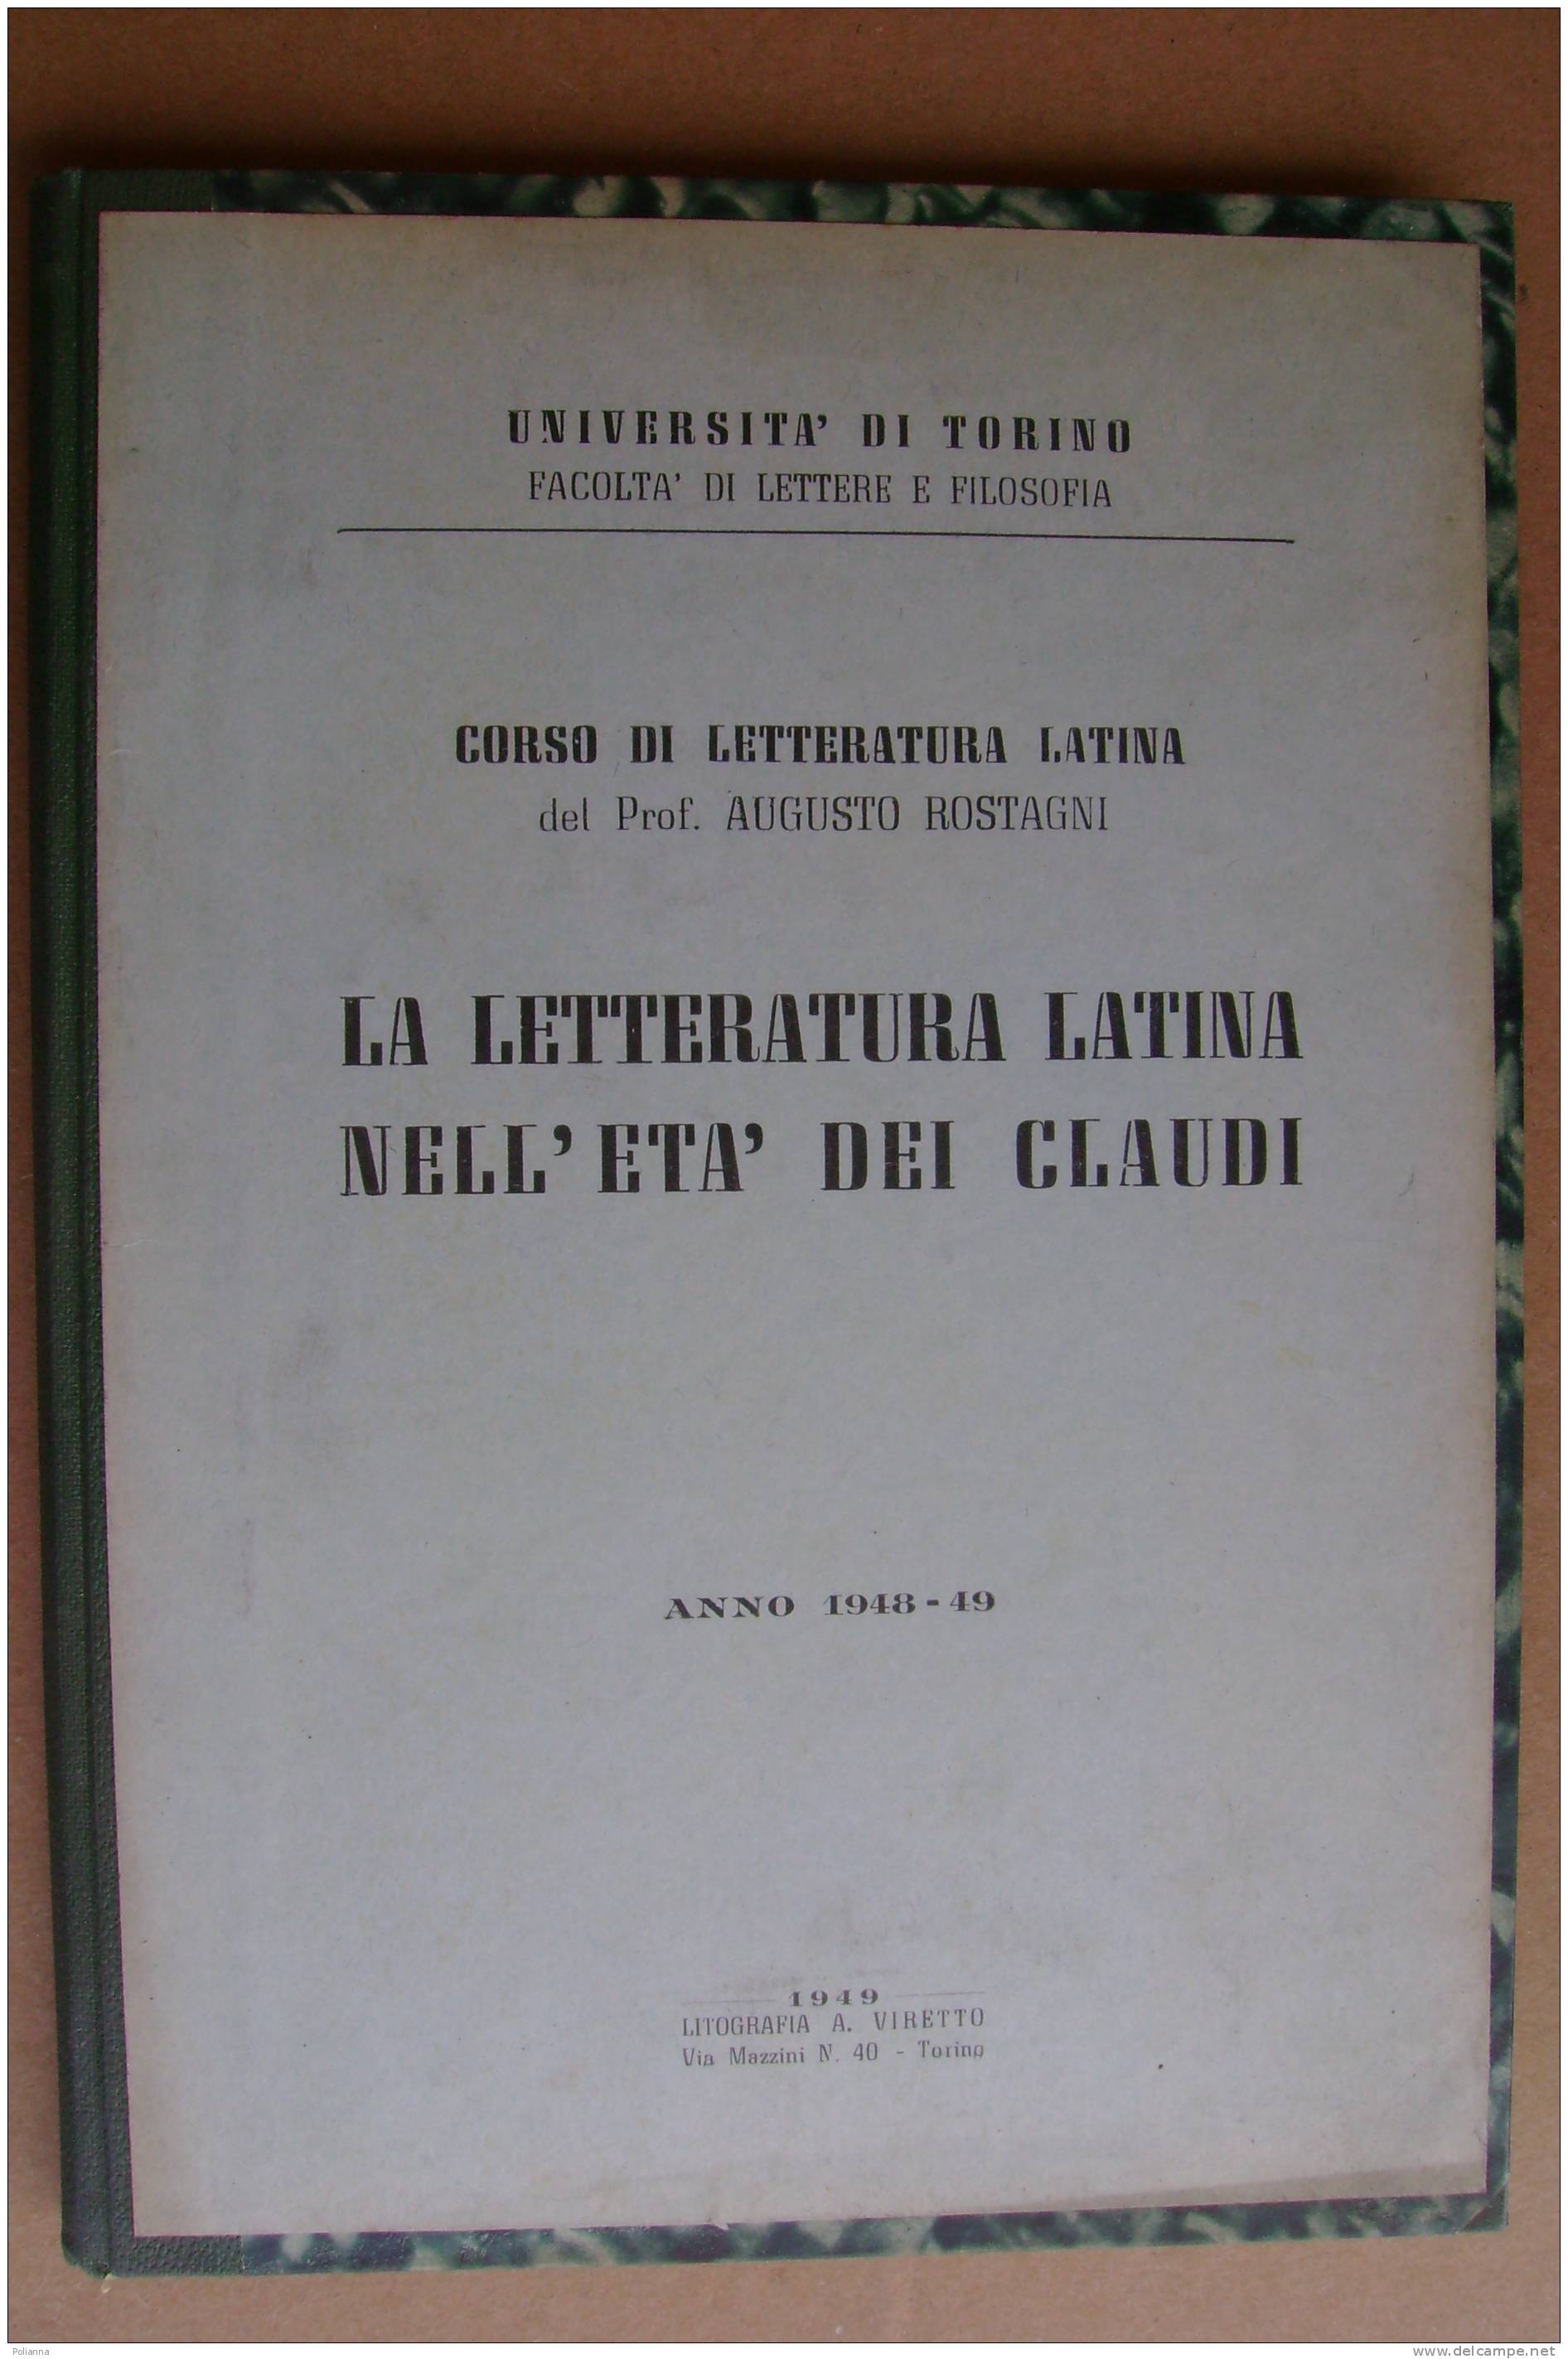 PAR/11 Rostagni LETTERATURA LATINA NELL´ETA´ DEI CLAUDI 1949 - Classici